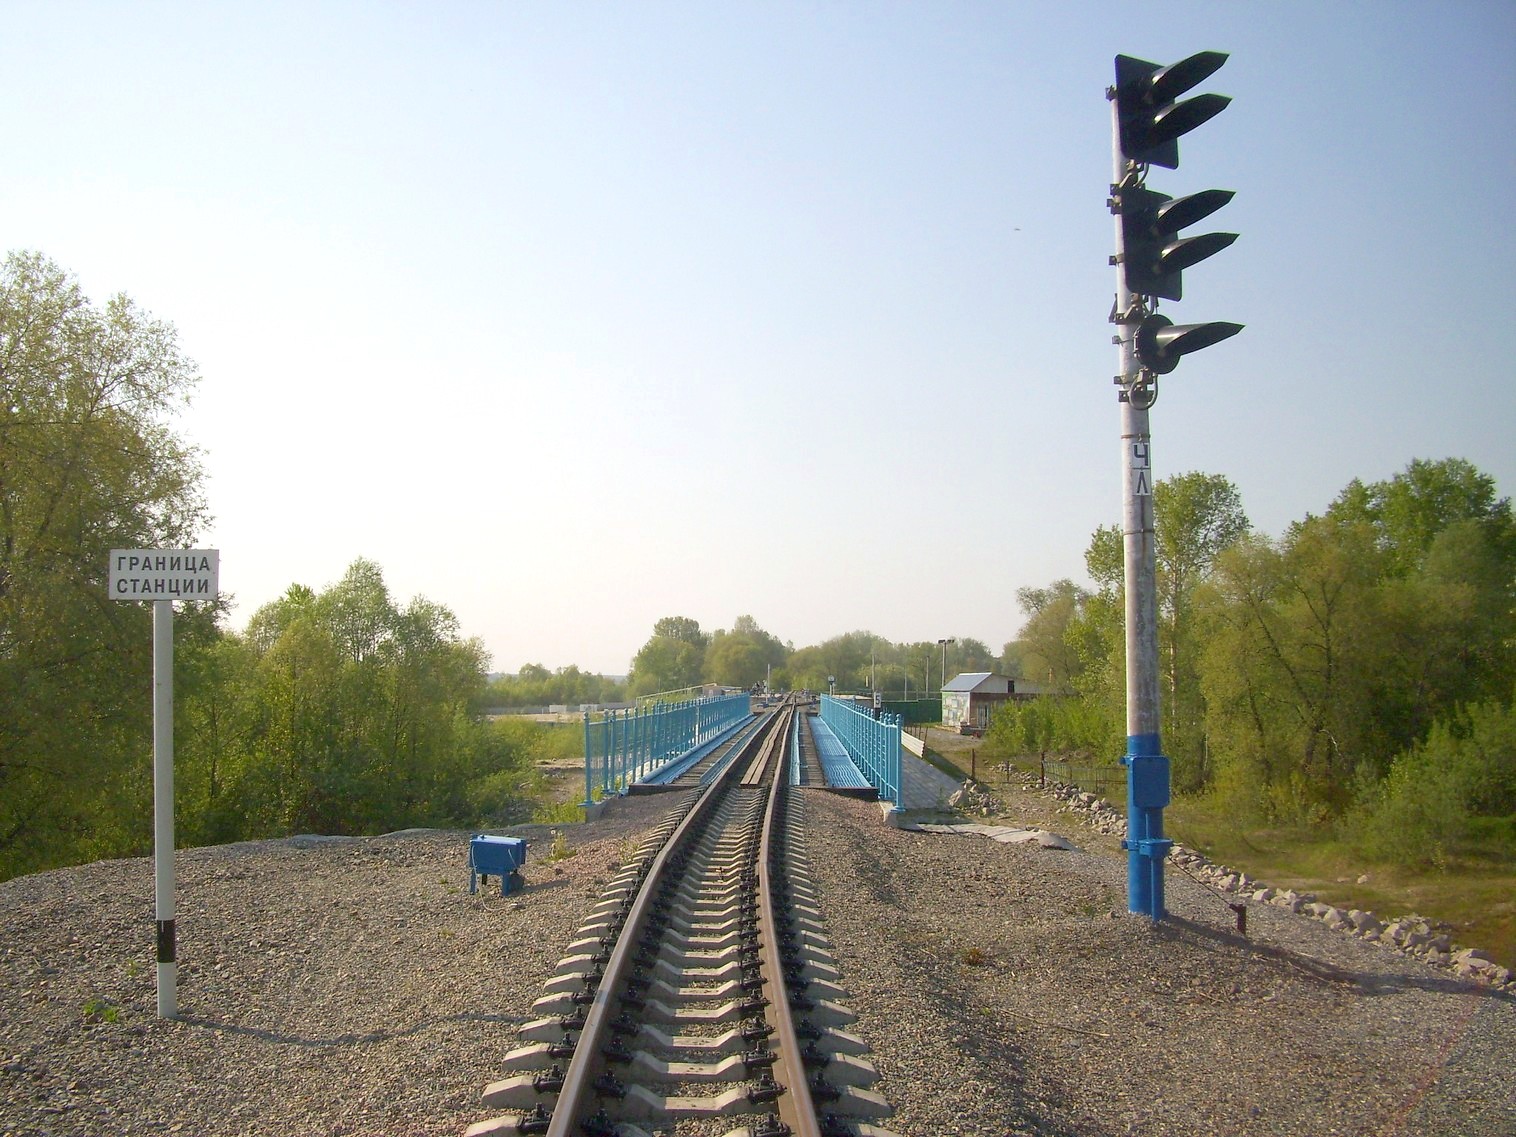 Малая Западно-Сибирская (Новосибирская) детская железная дорога  —  фотографии, сделанные в 2011 году (часть 3)